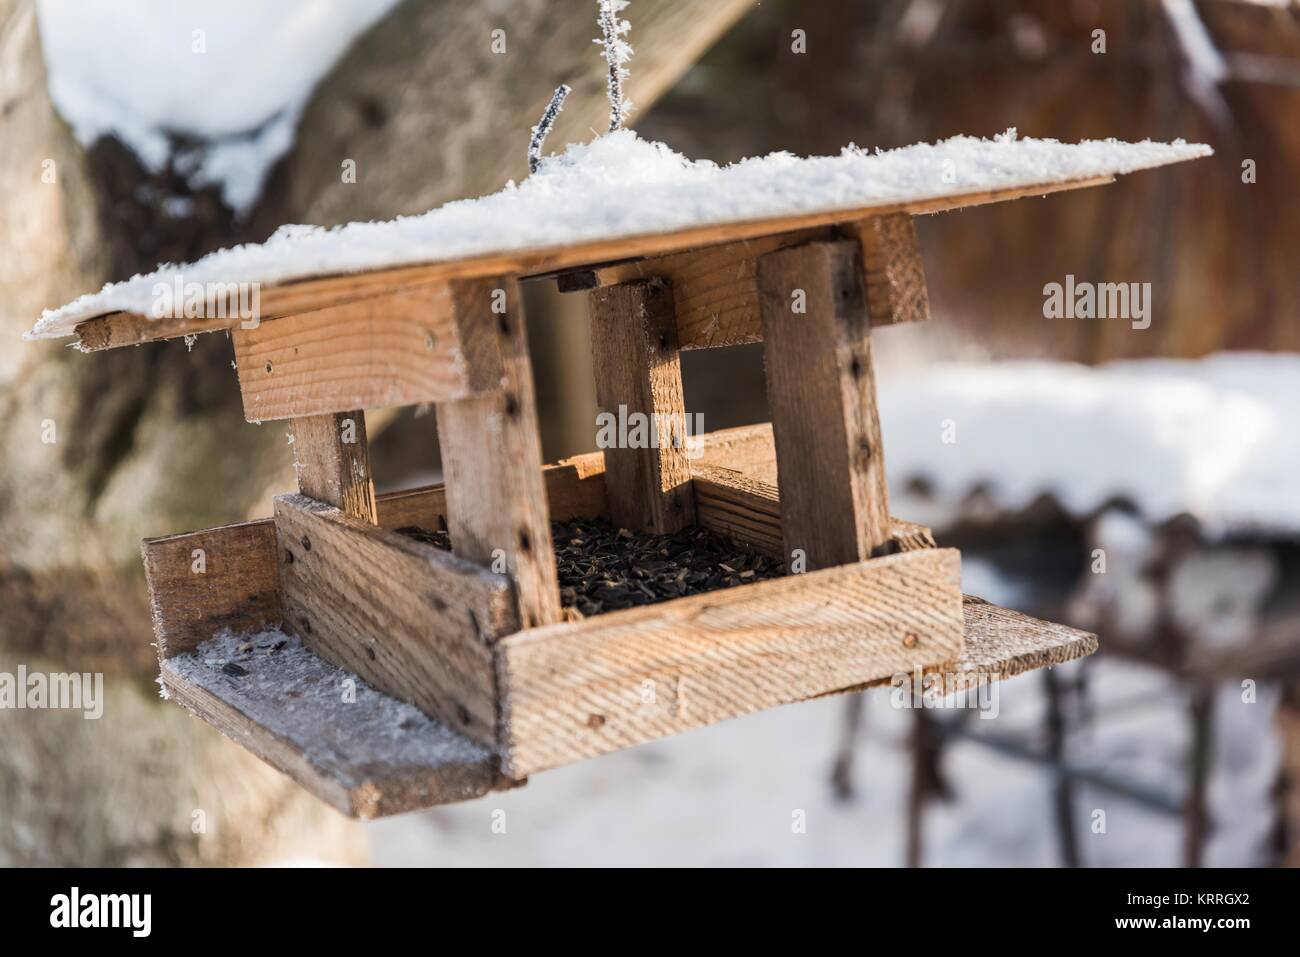 Wooden bird feeder with sunflower seeds in winter Stock Photo